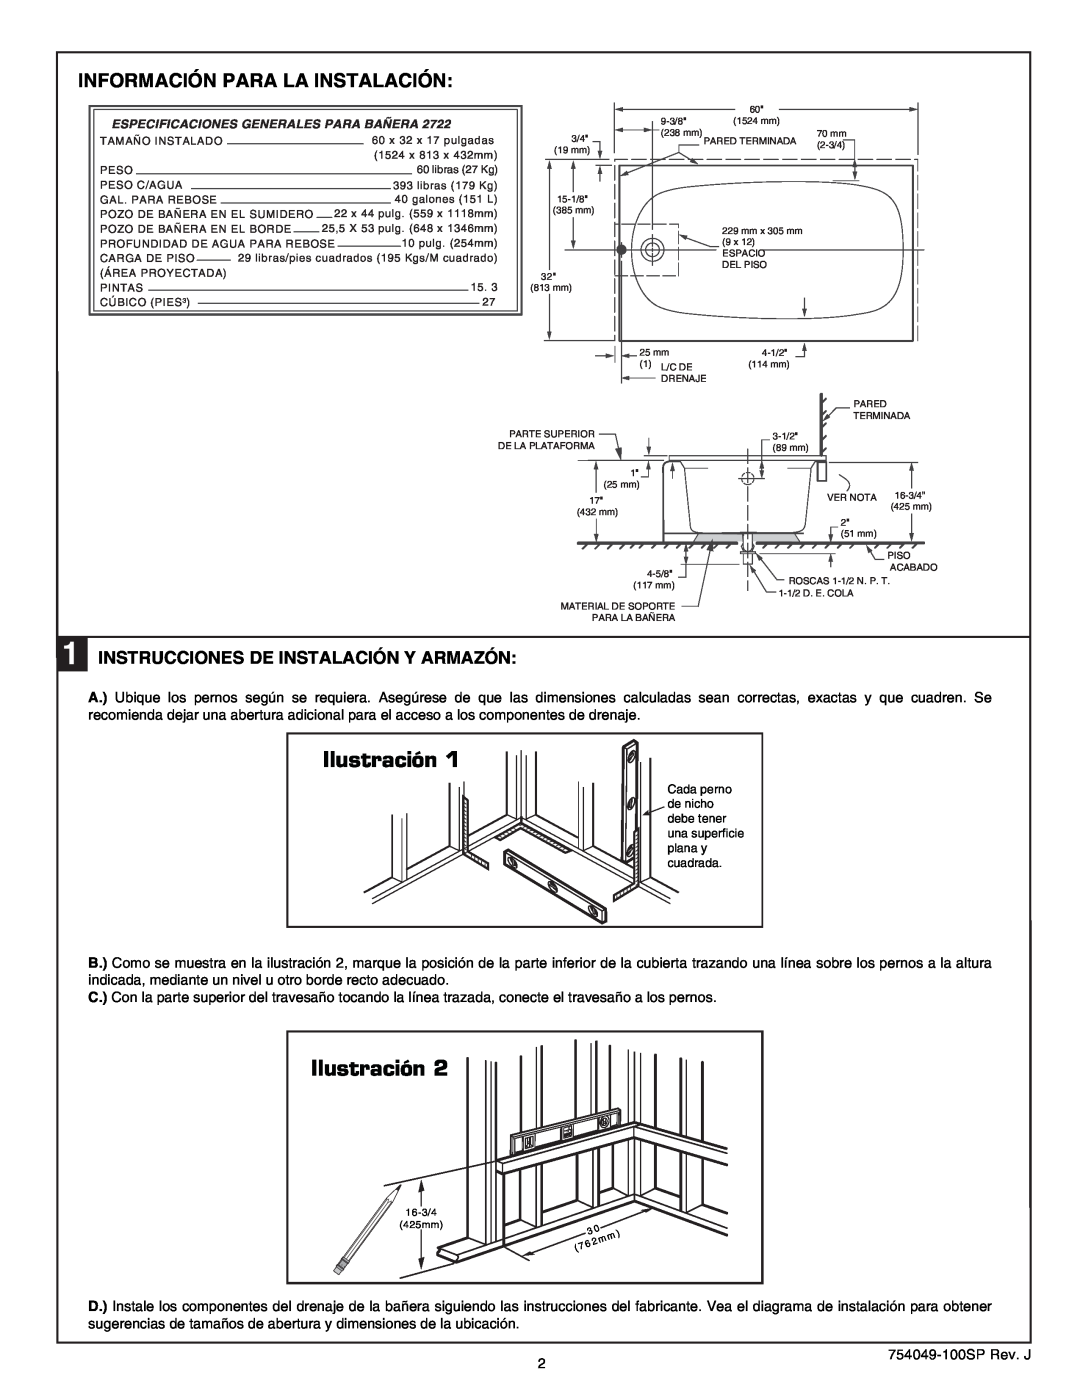 American Standard 2722.102 RHO, Rope Twist Bathing Pool, 2722.202 LHO warranty Ilustración, Información Para La Instalación 